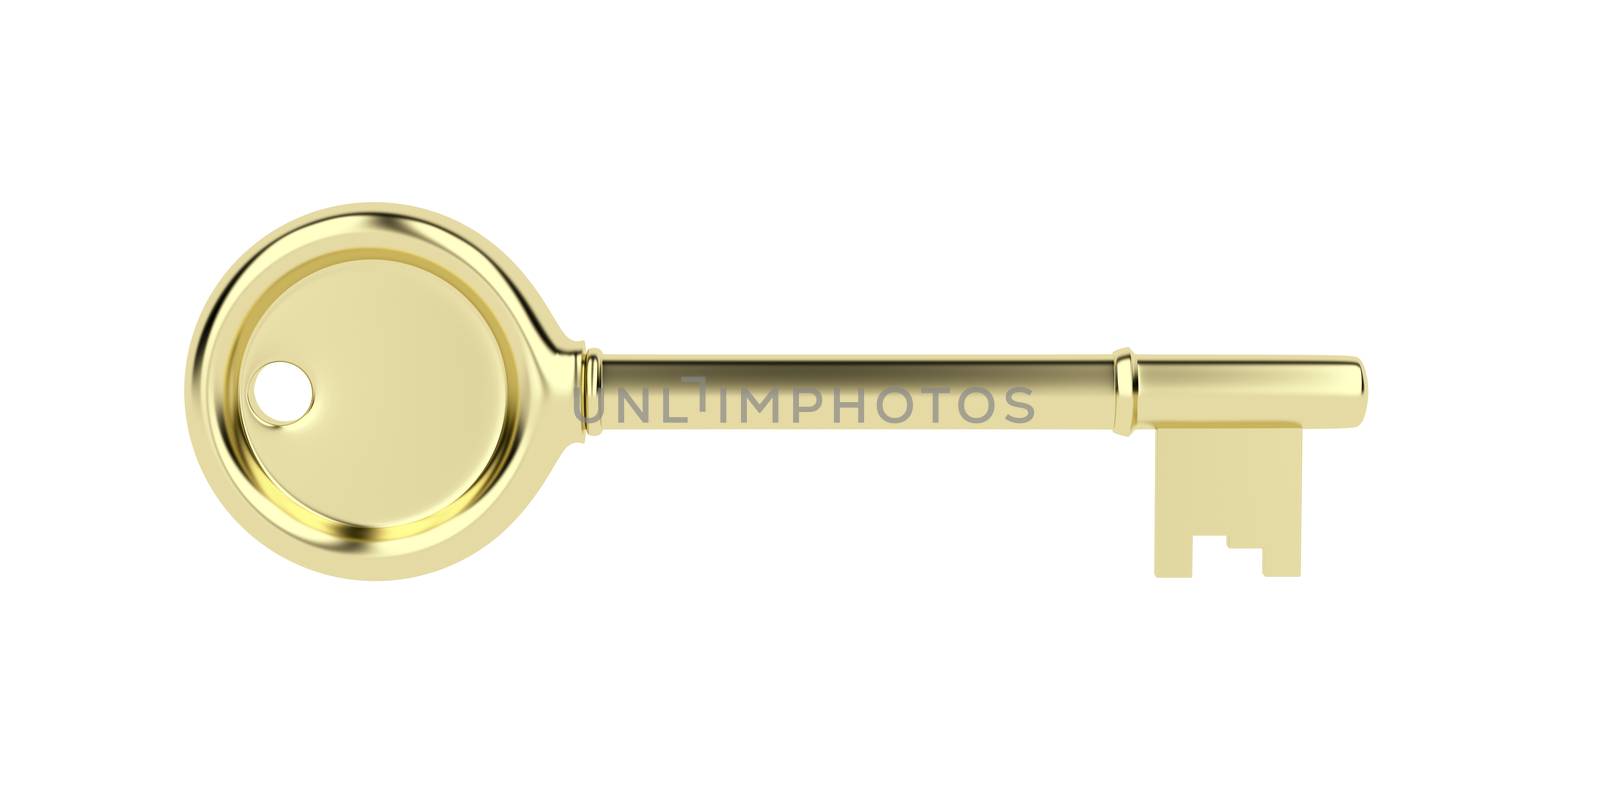 Gold key isolated on white background